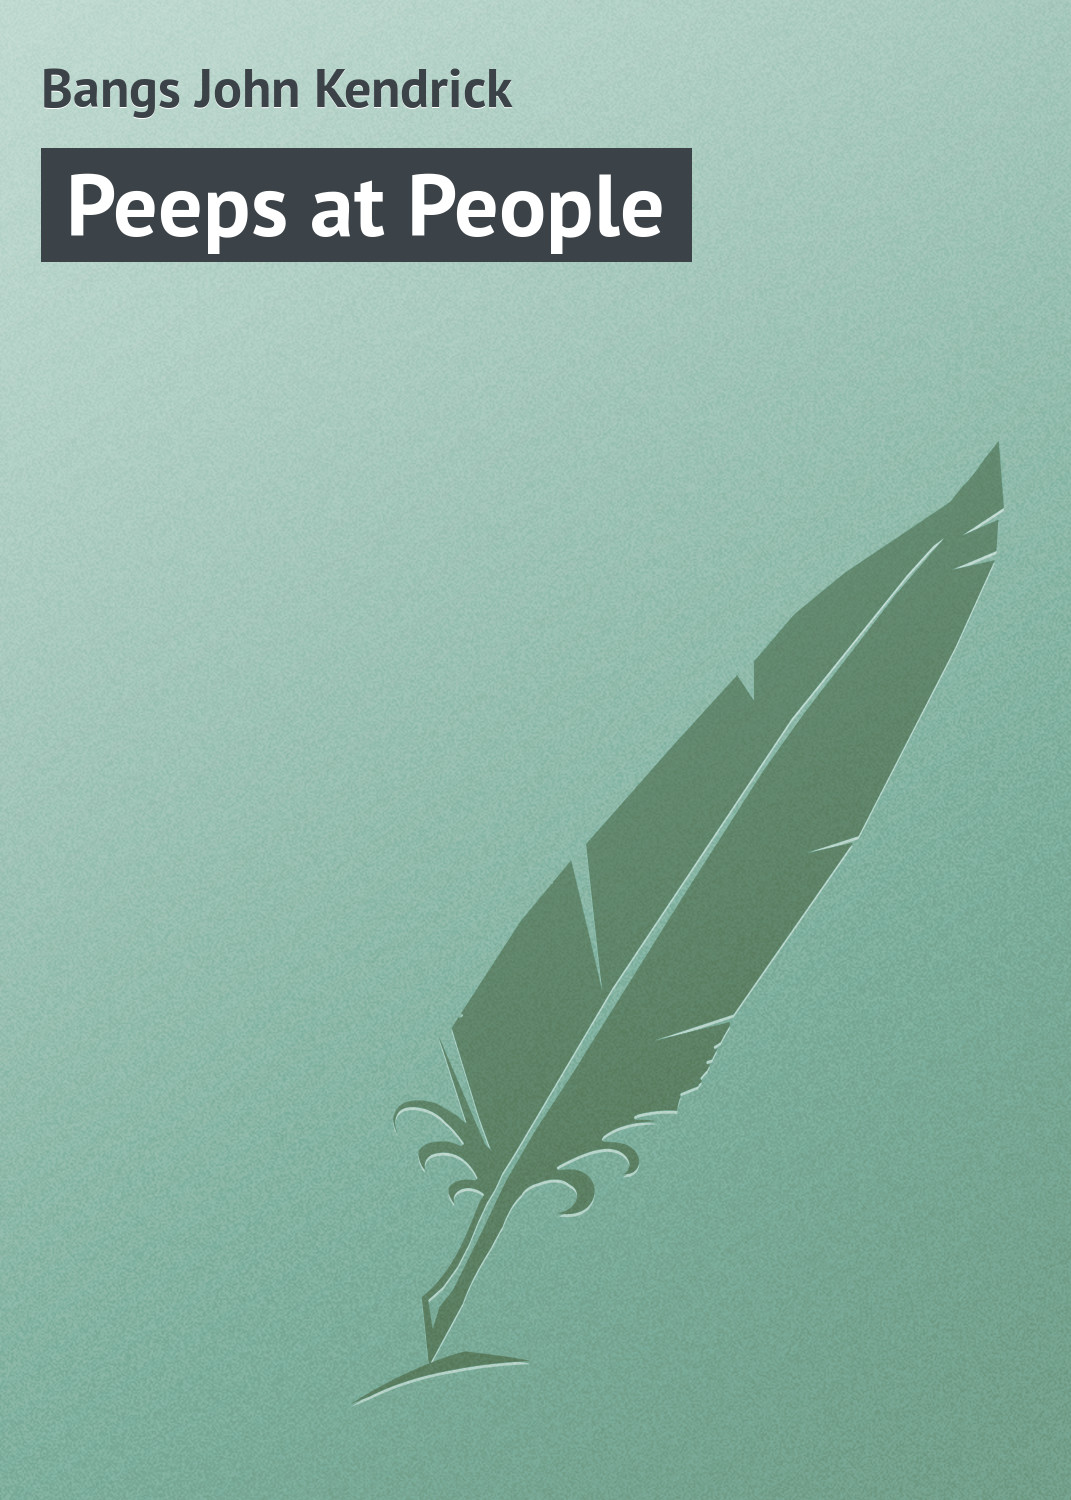 Книга Peeps at People из серии , созданная John Bangs, может относится к жанру Зарубежная классика, Зарубежный юмор, Иностранные языки. Стоимость электронной книги Peeps at People с идентификатором 23156923 составляет 5.99 руб.